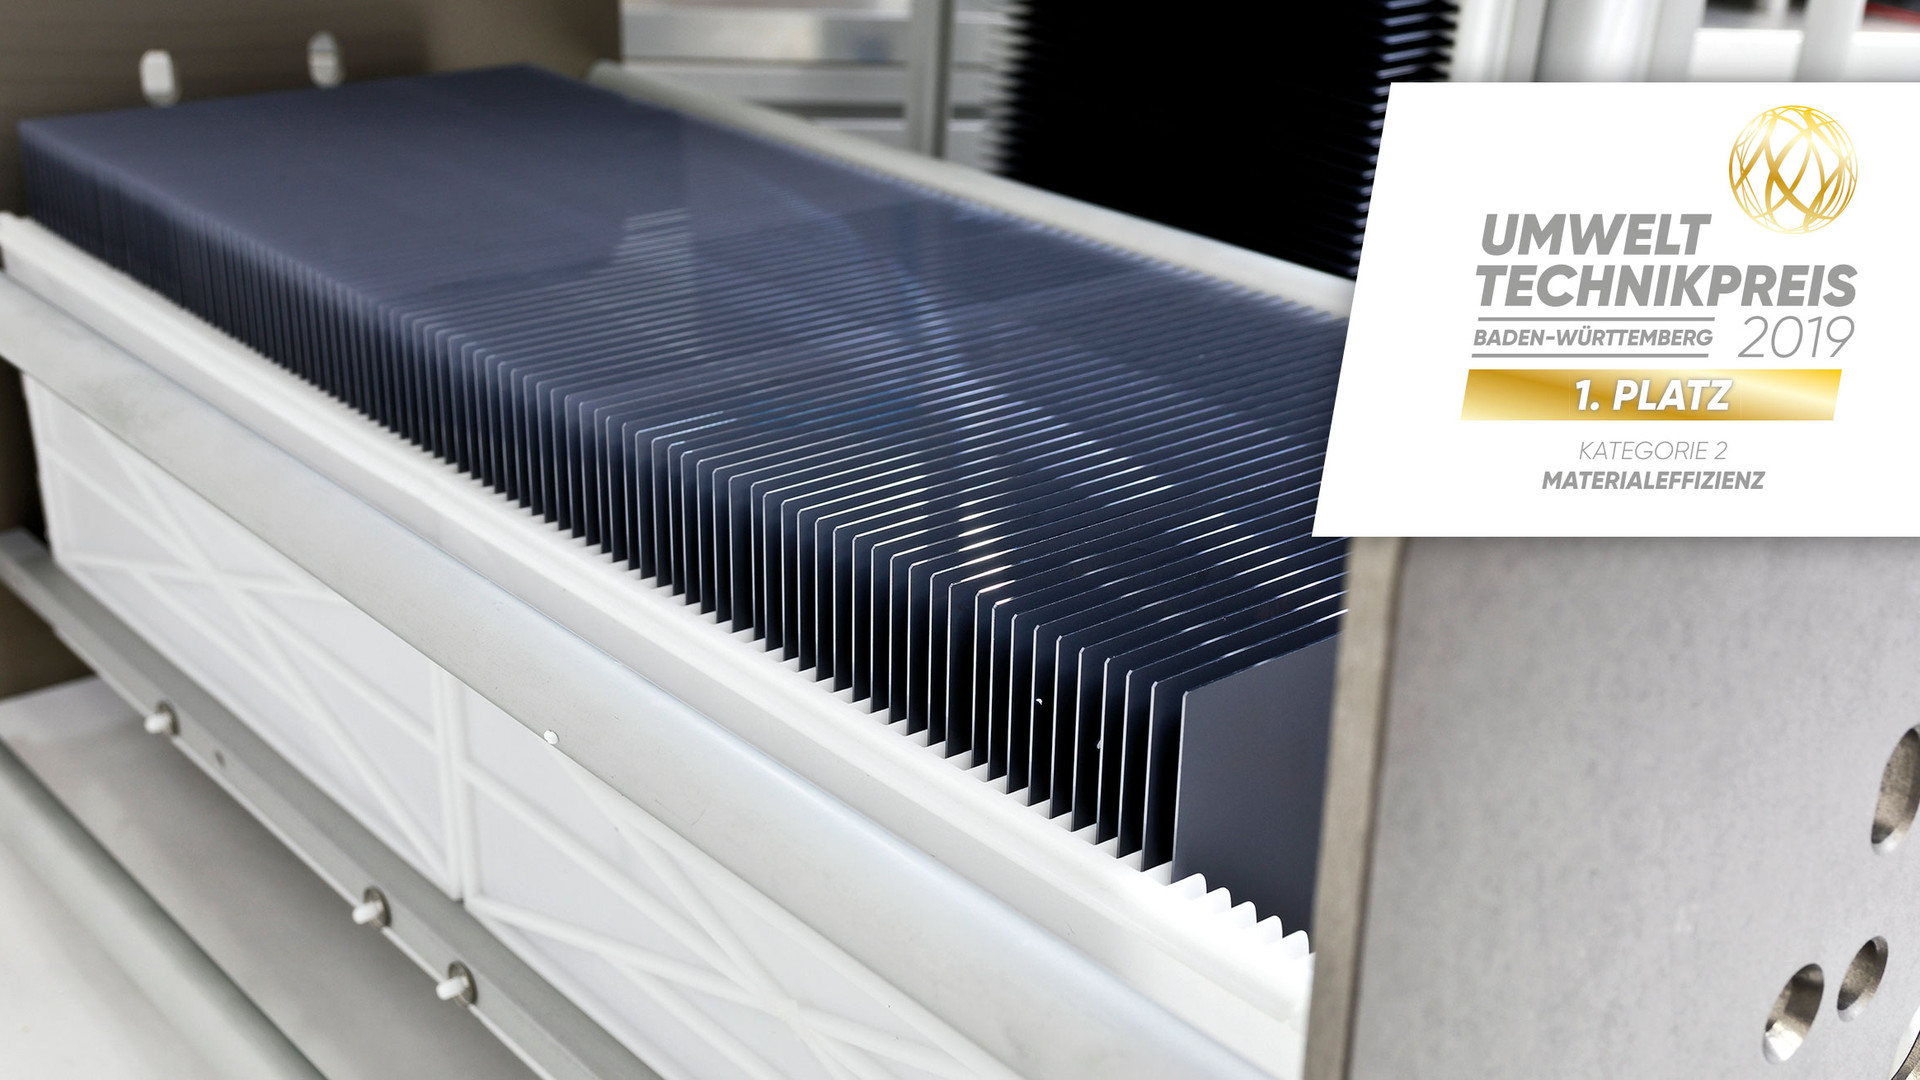 NexWafe GmbH – Sägeverlustfreie Herstellung von Siliziumwafern für die Solarindustrie